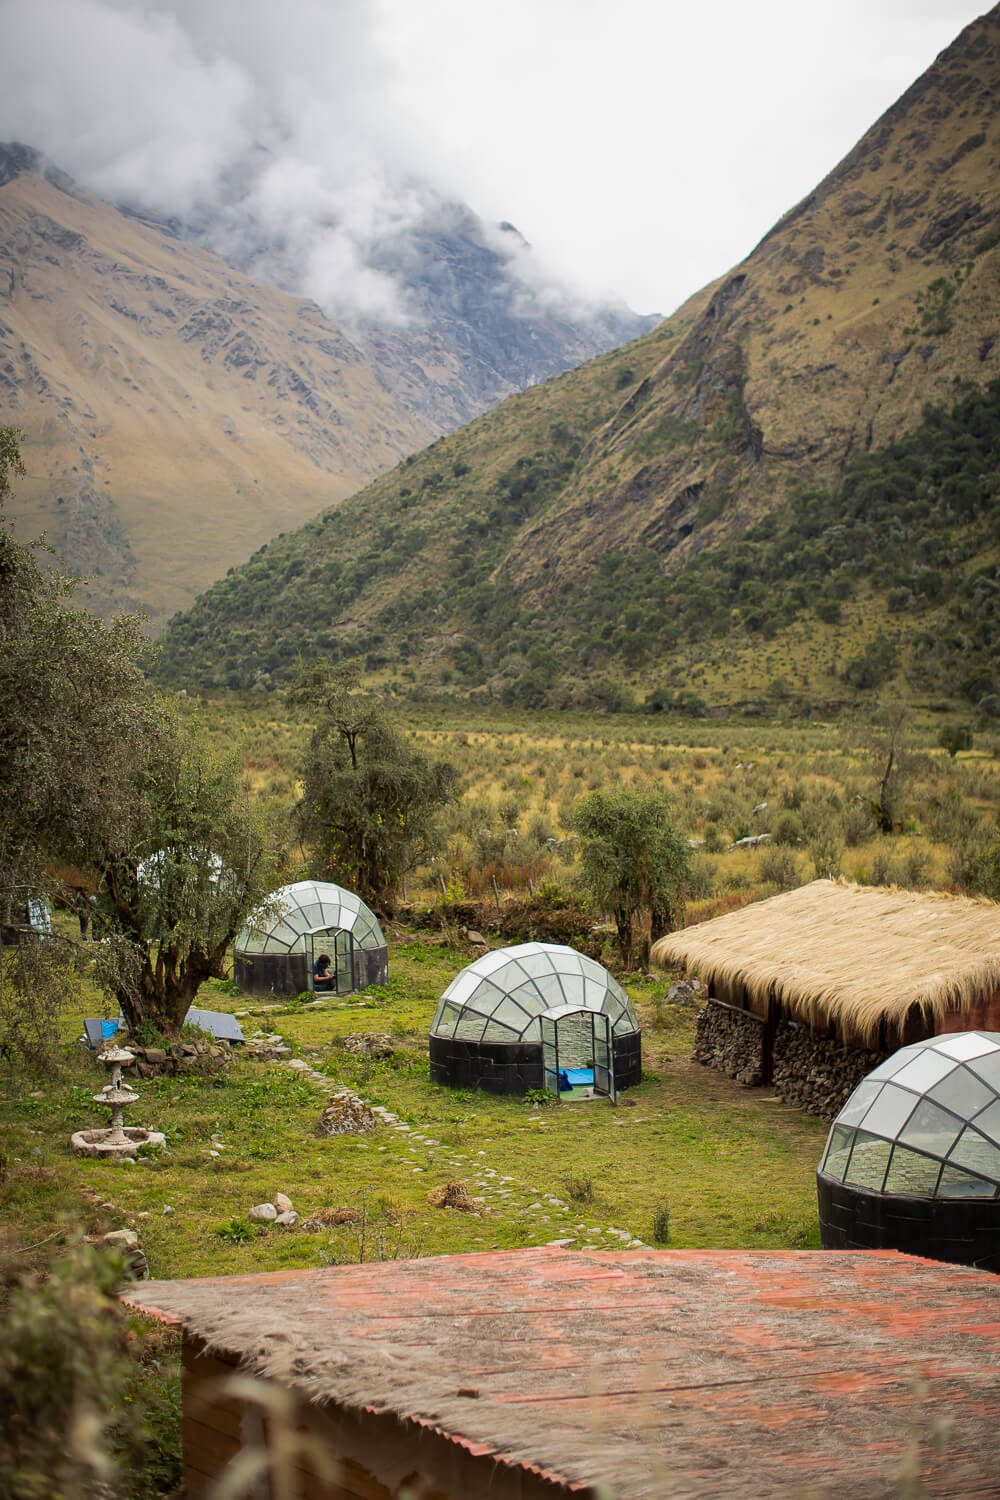 Camping Huts along the Salkantay Trek